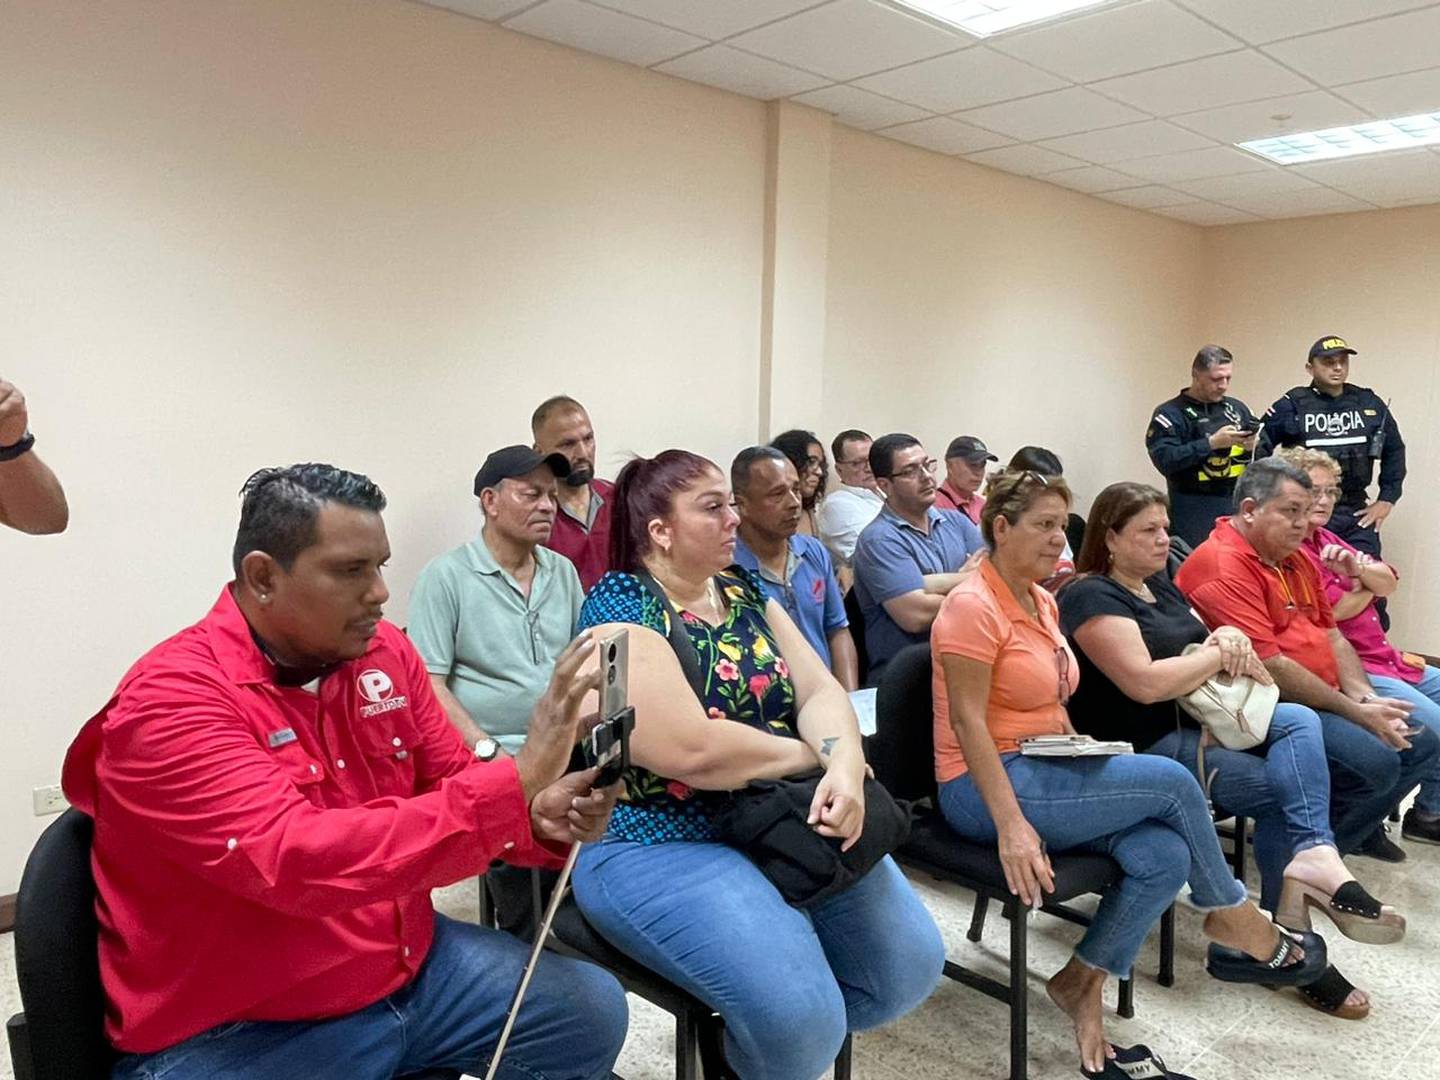 La ministra de Salud, Mary Munive, visitó el sábado 28 de octubre, el mercado municipal de Puntarenas junto a autoridades locales como el alcalde Wilmer Madriz y los propios trameros.